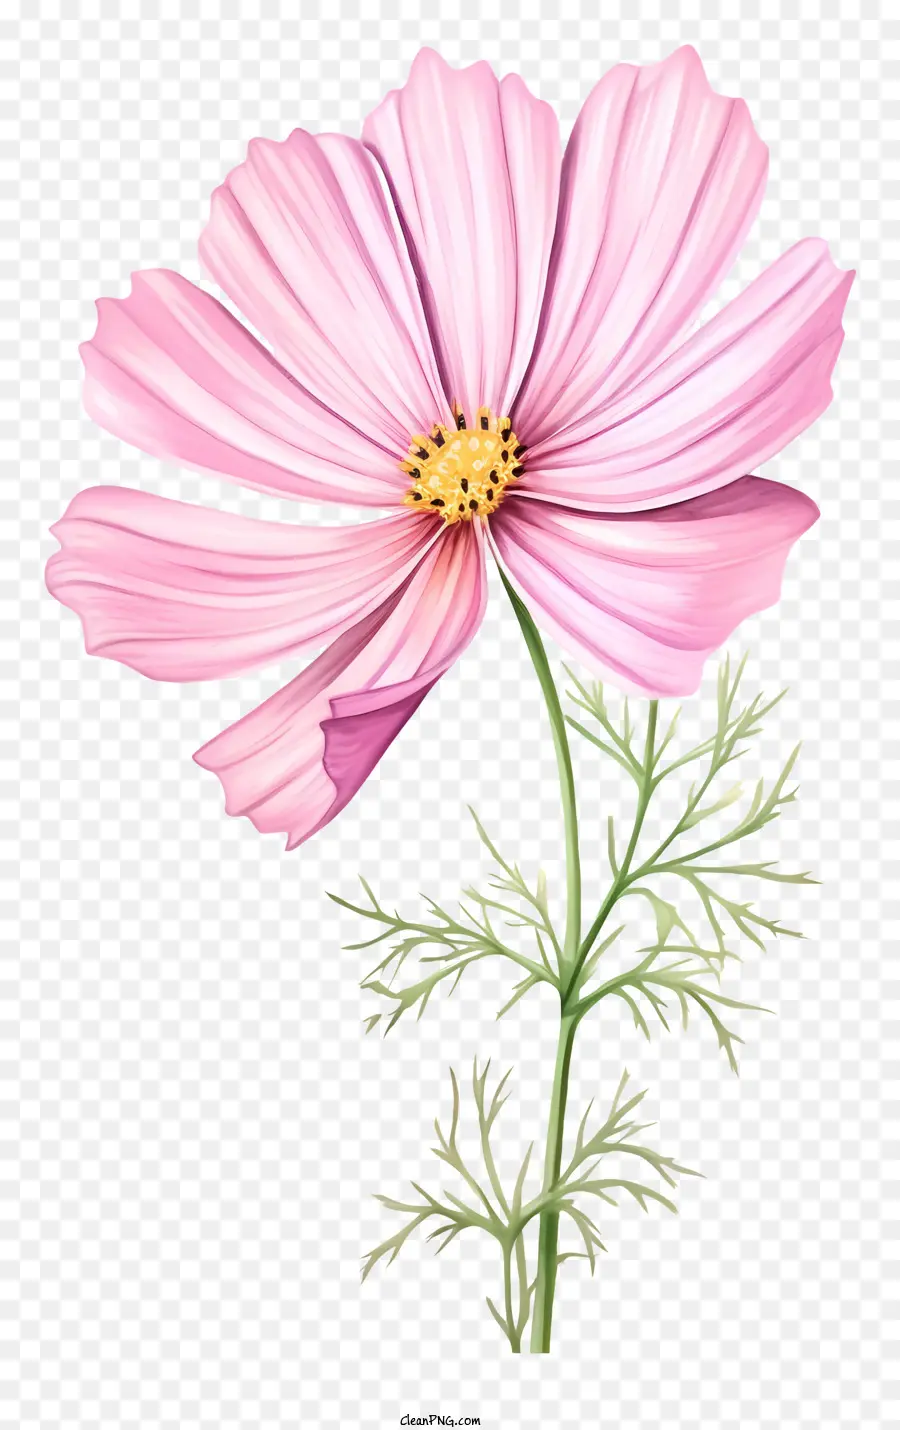 rosa Blume - Große rosa Blume mit grünen Blättern zeigt die Natur